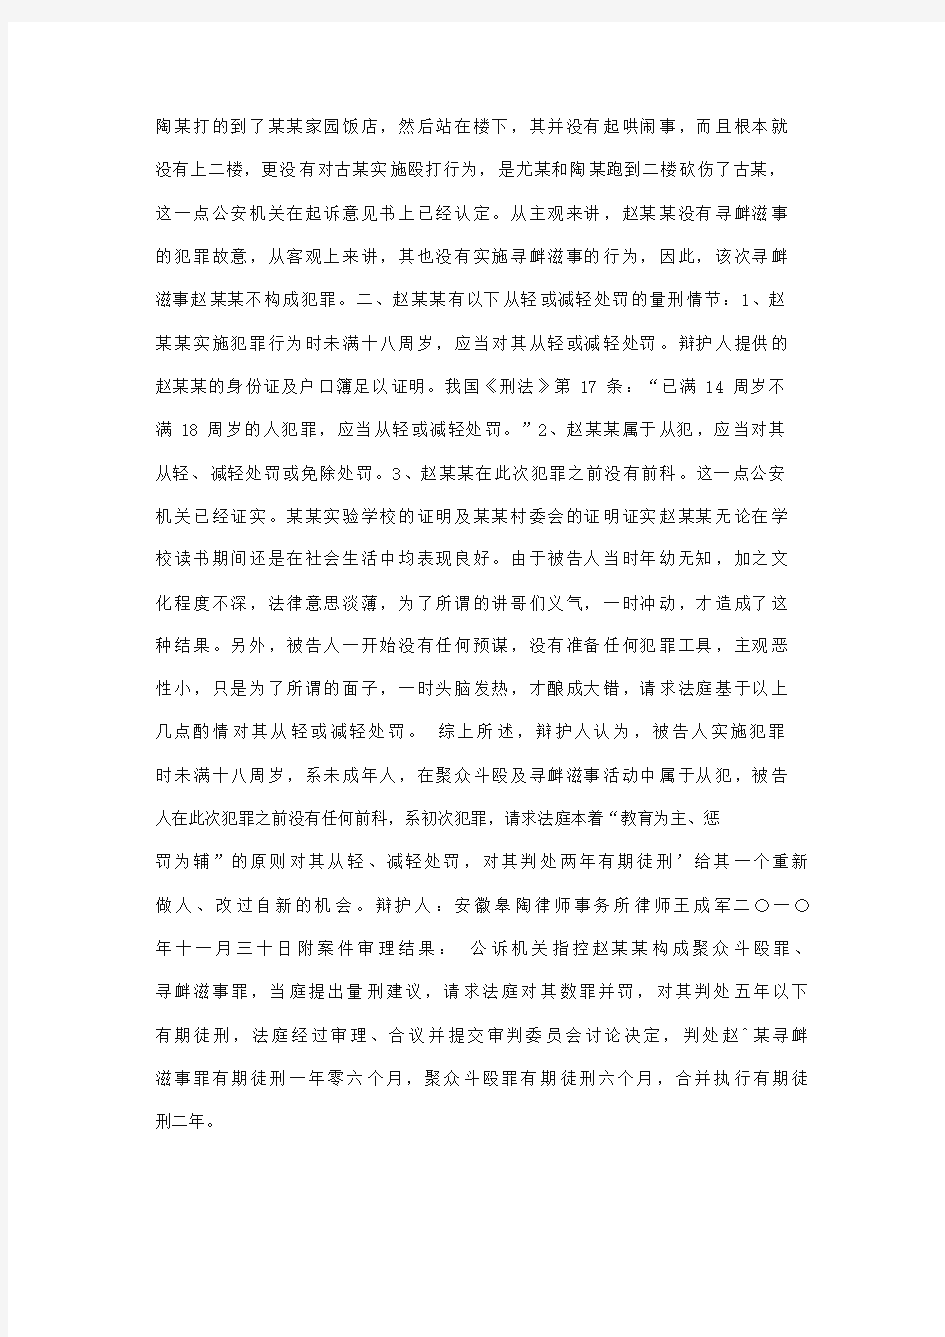 【案例】  赵某某聚众斗殴罪、寻衅滋事罪辩护词